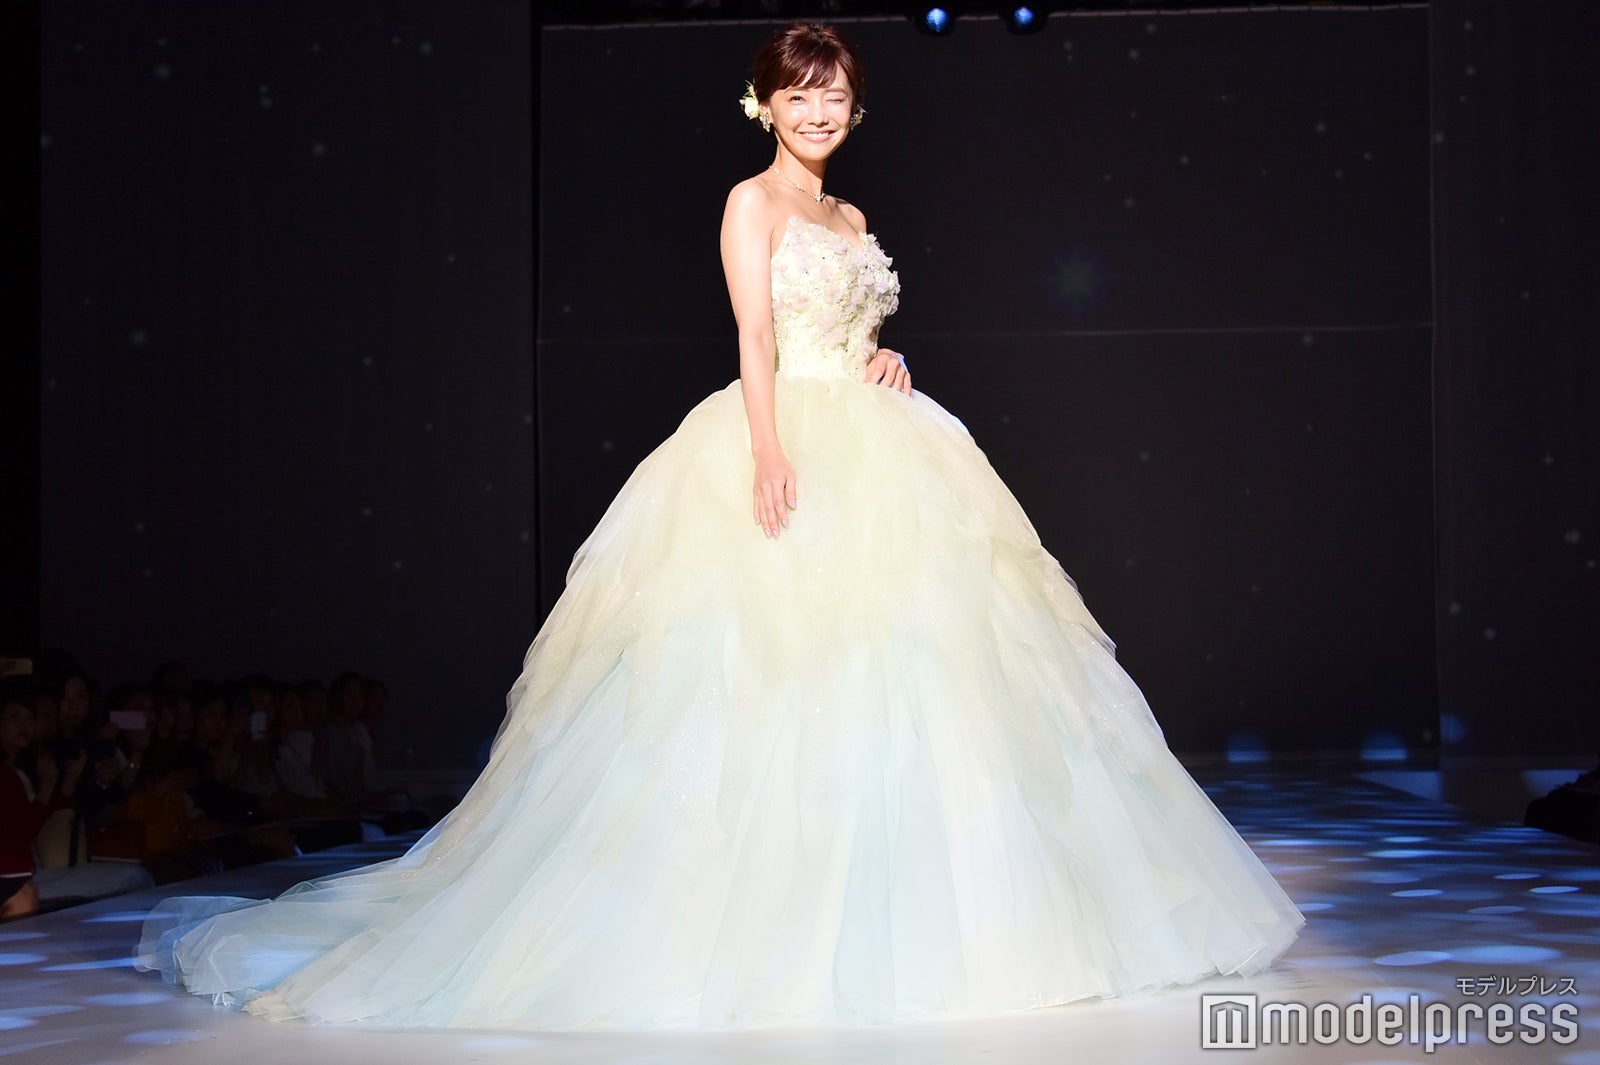 倉科カナ ウエディングドレス姿を披露 理想のプロポーズ 結婚式を明かす モデルプレス